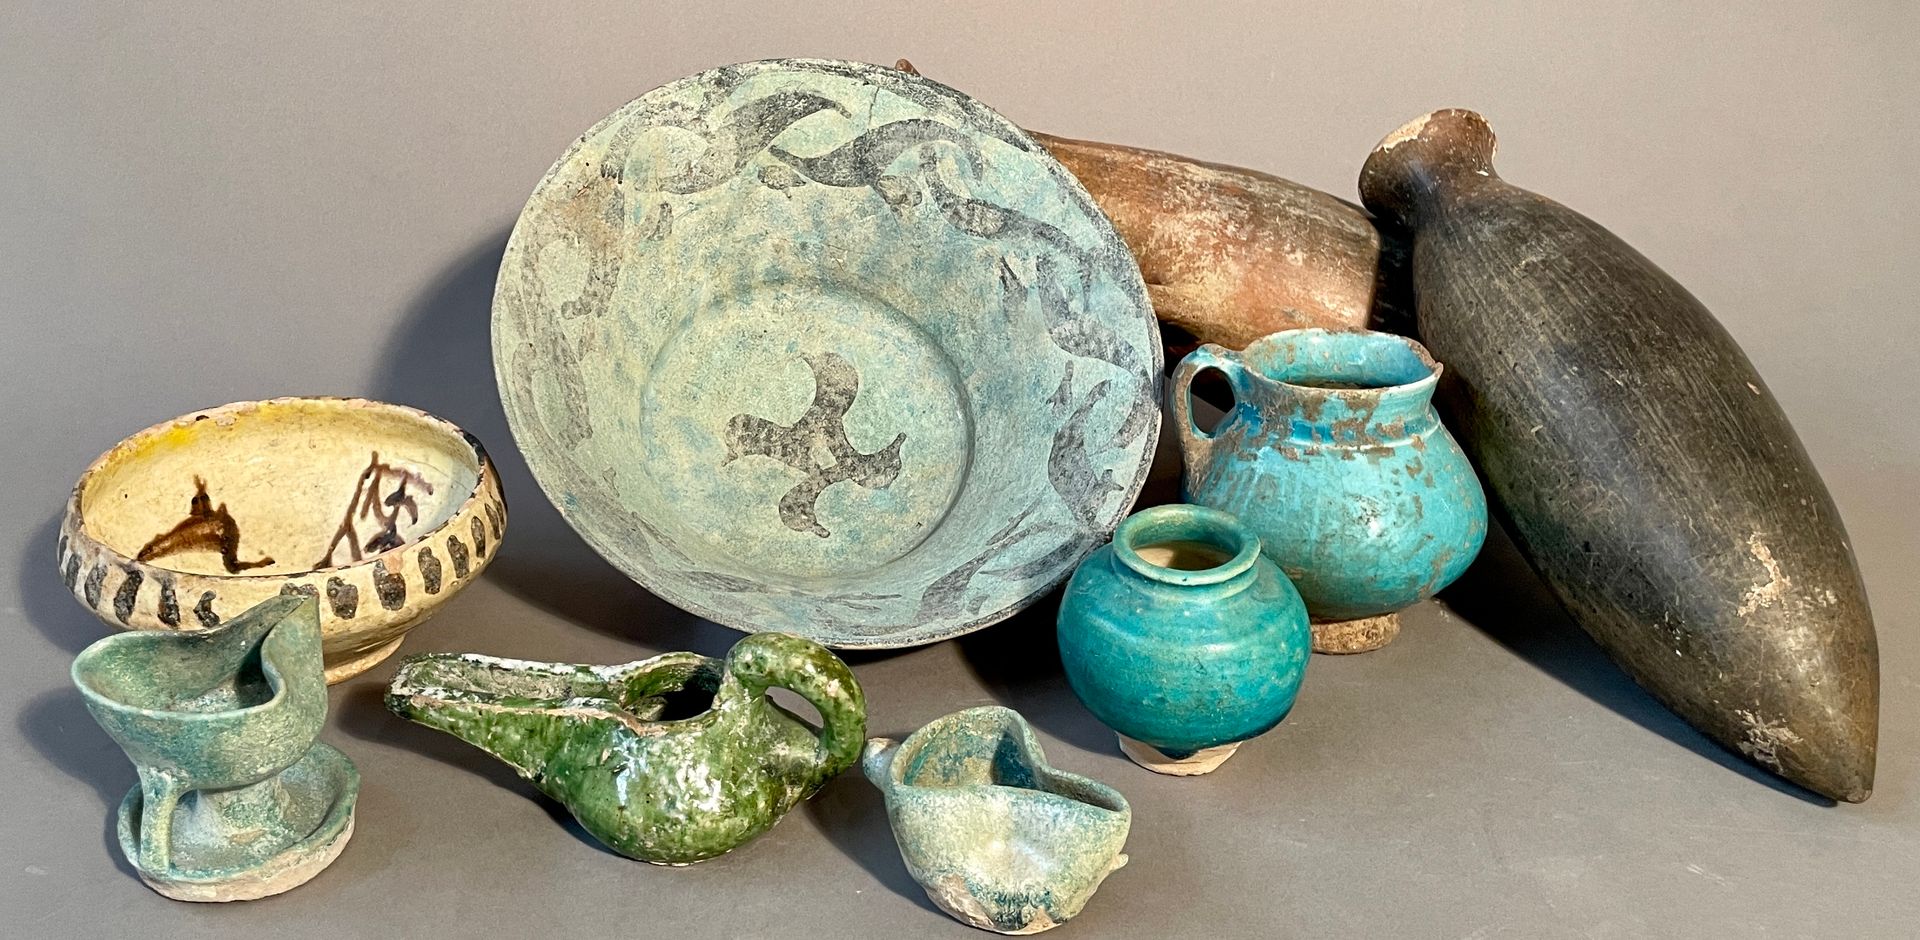 Null 拍品包括9件。
-伊斯兰时期的小型釉面陶瓷壶
-釉面陶瓷花瓶，伊斯兰时期
-带铭文和鸟的陶瓷碗，伊斯兰时期
-两盏伊斯兰时期的釉面陶器灯
-伊斯兰时期&hellip;